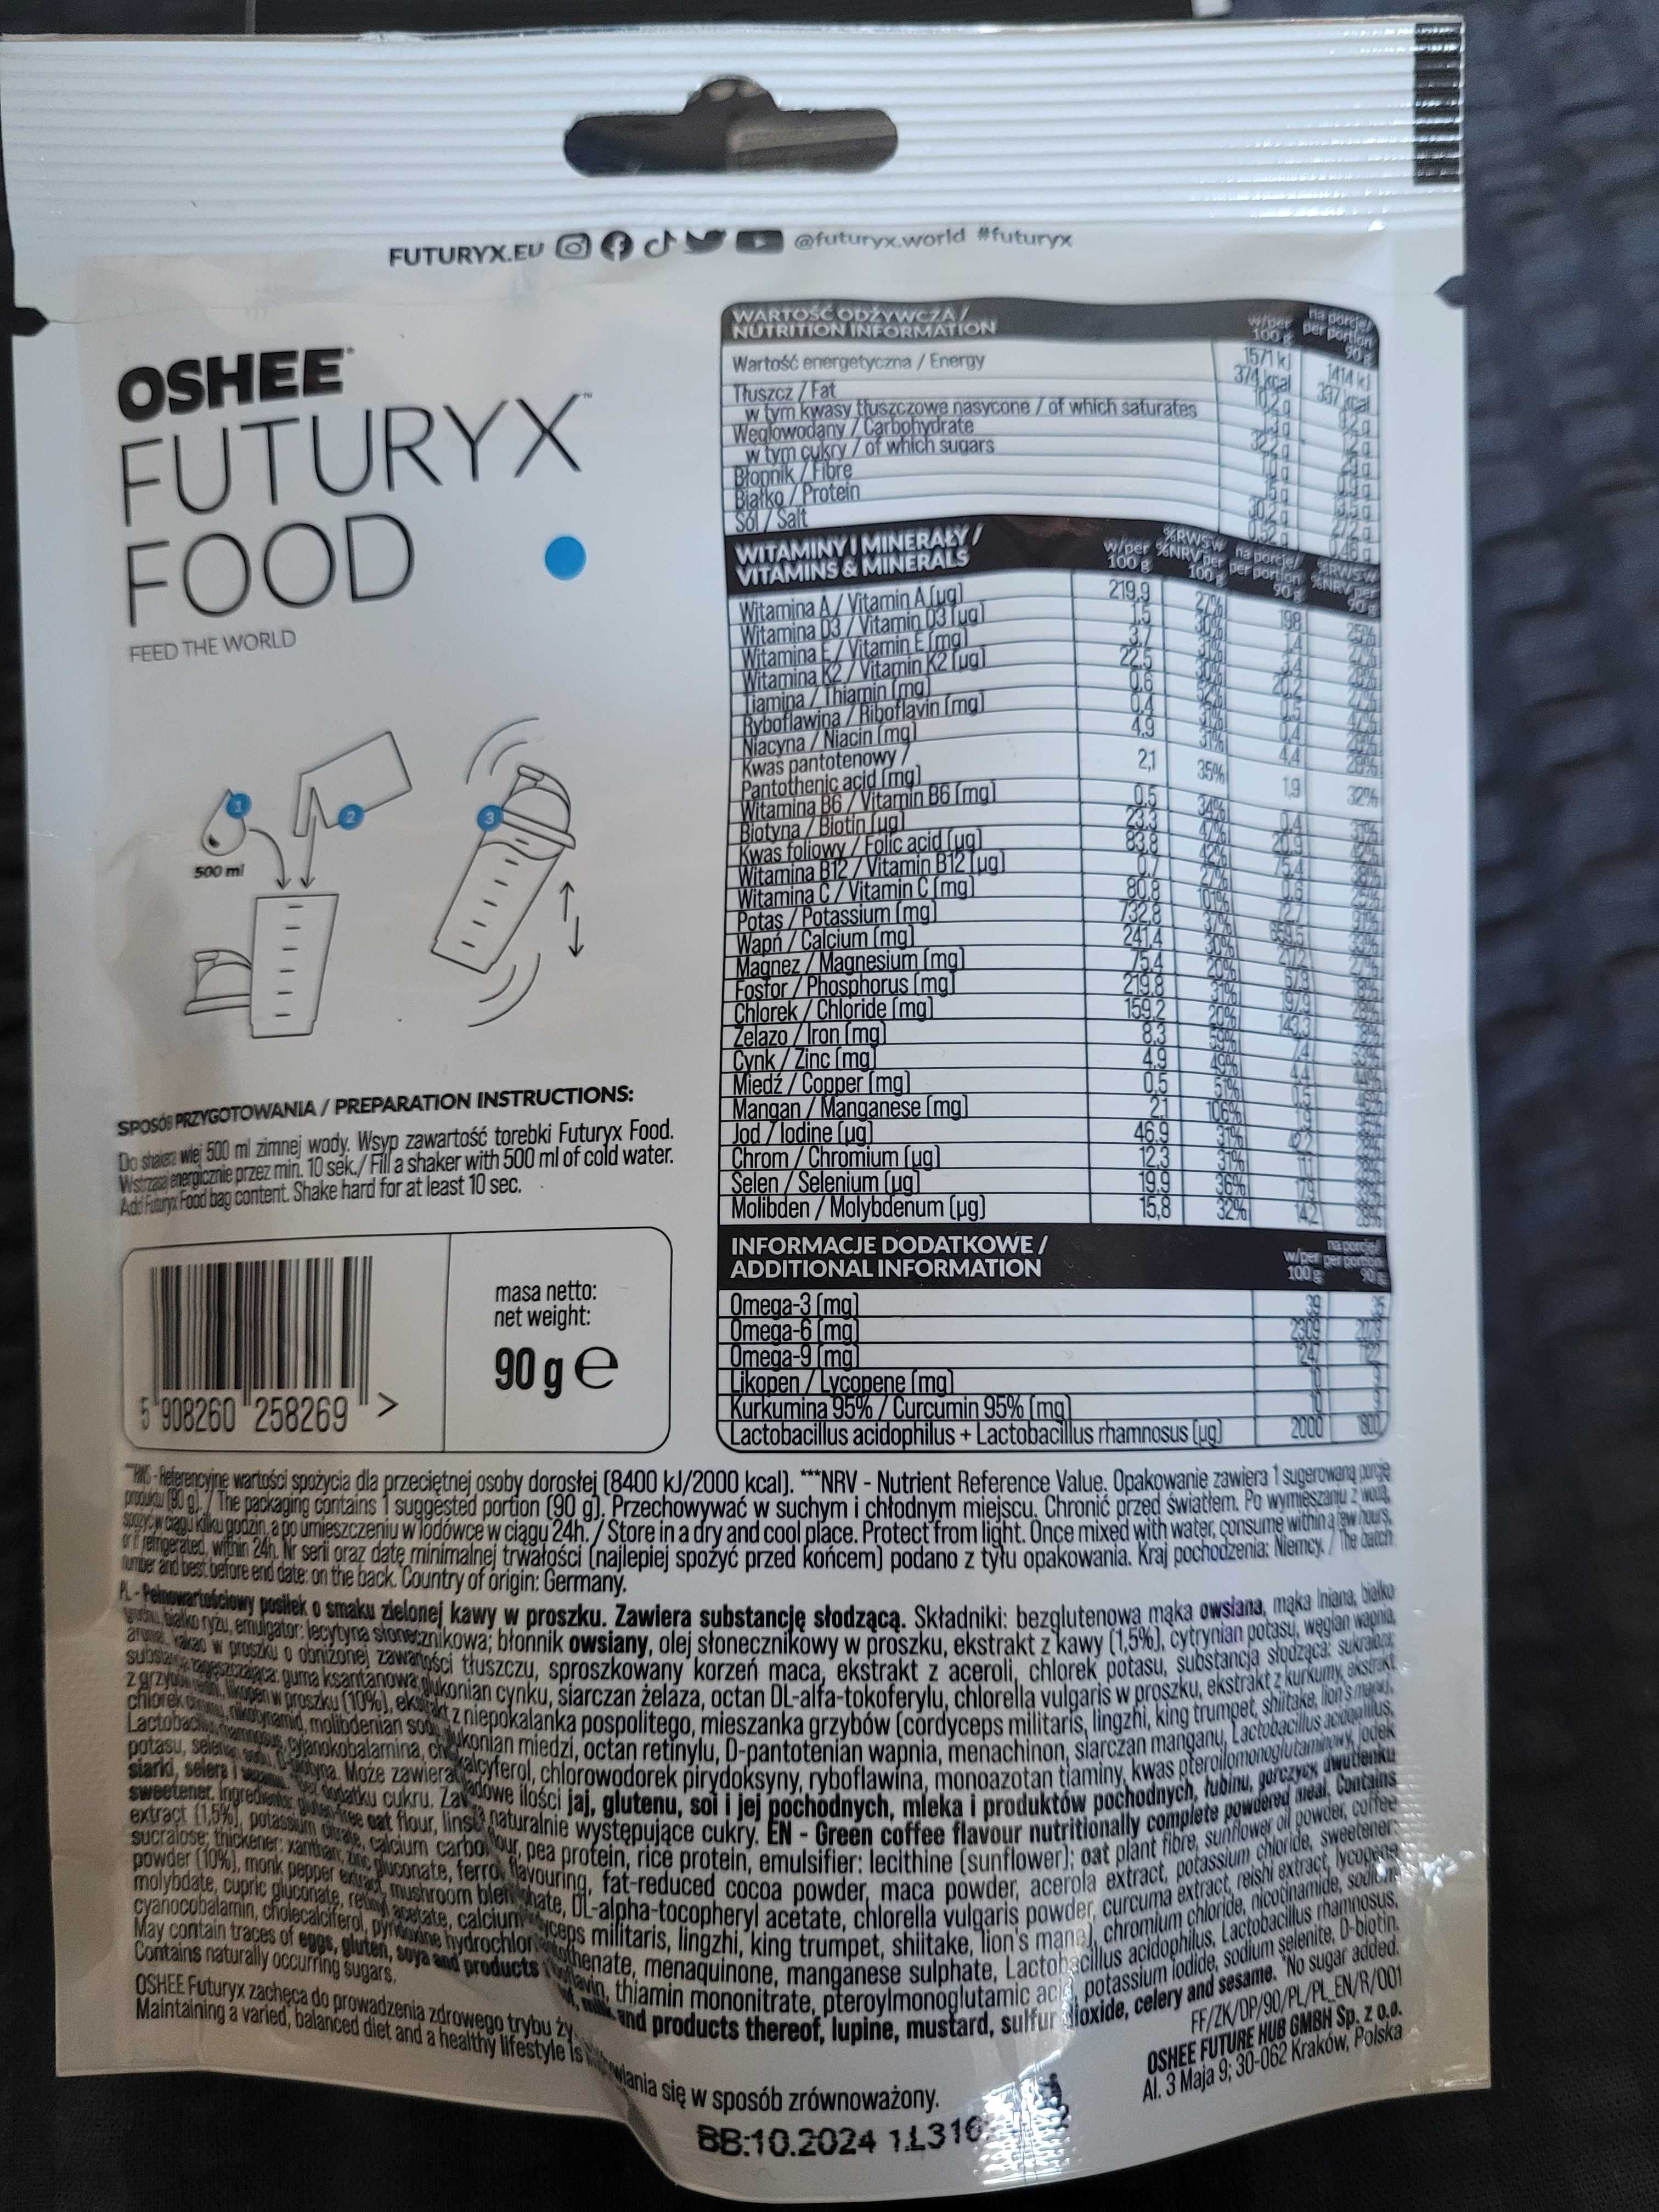 Oshee futuryx food 3 różne porcje po 90 g.